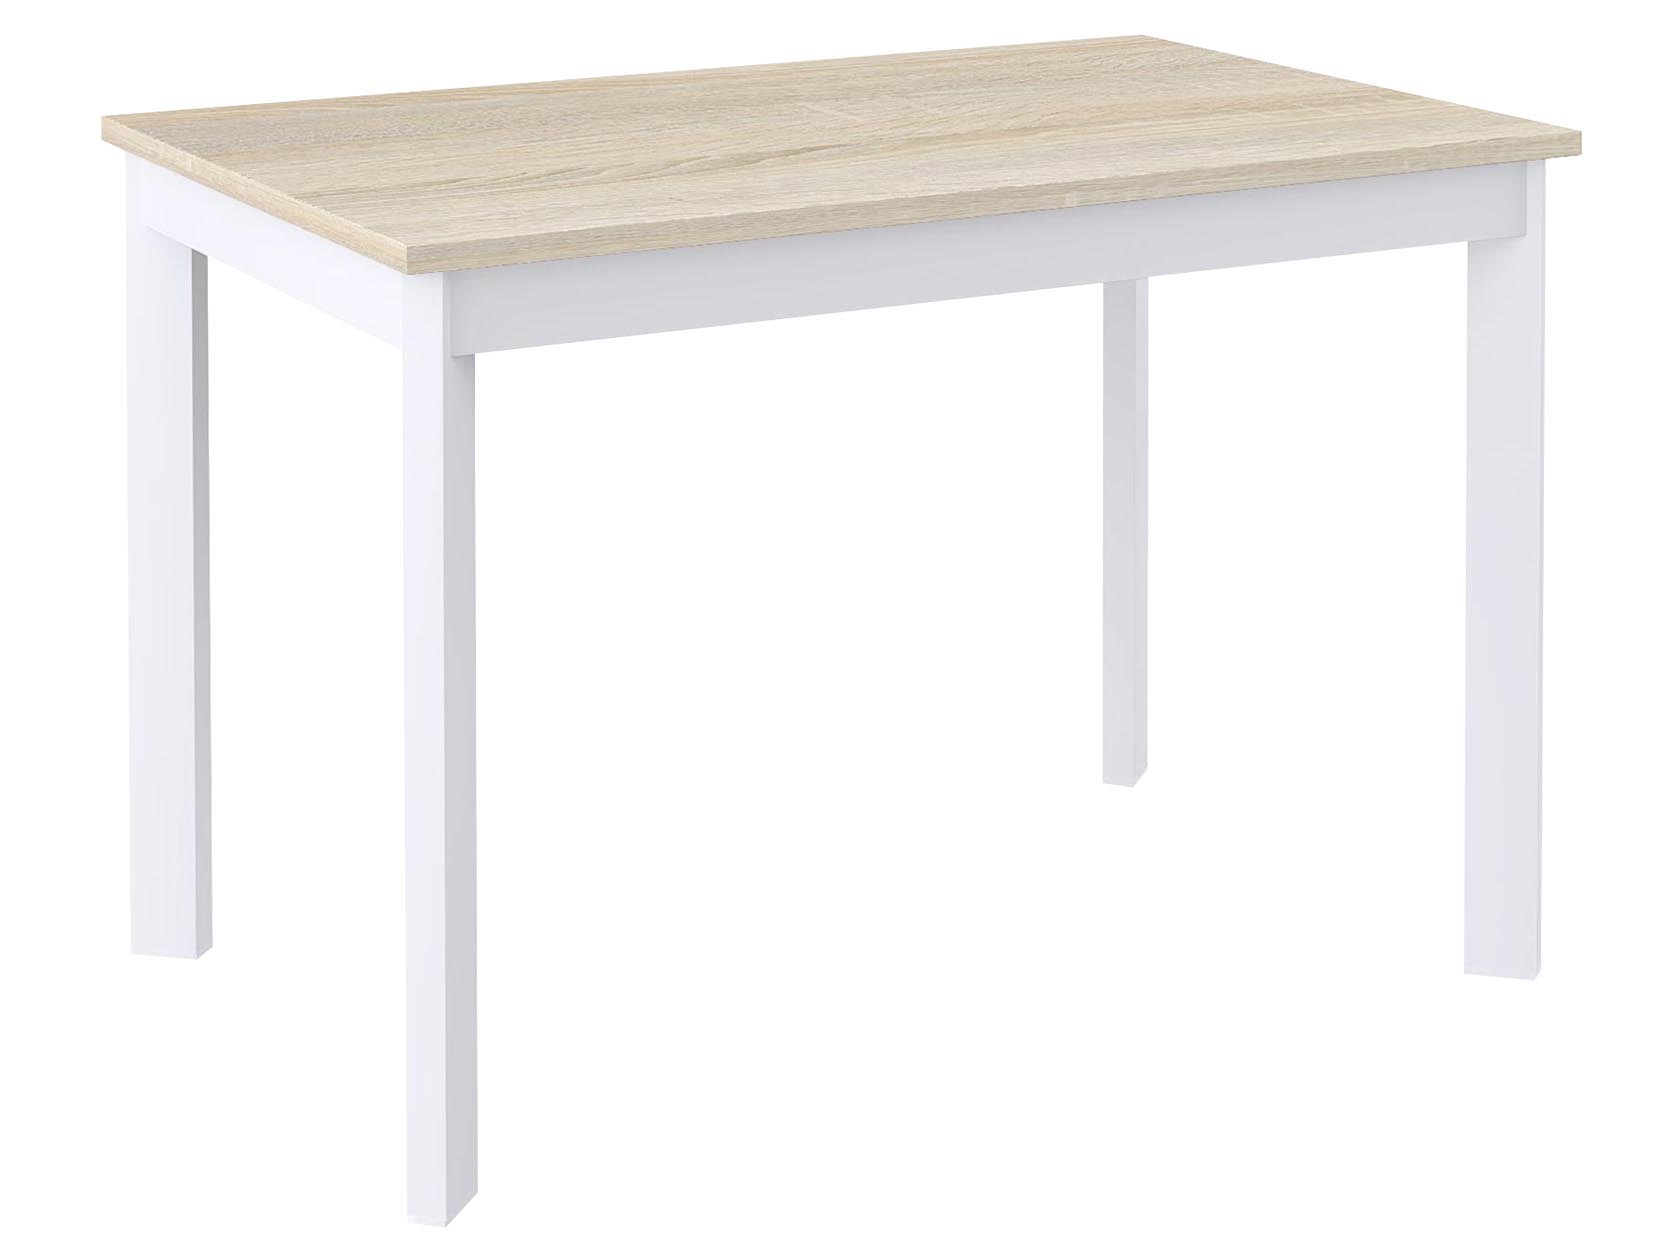 узкий кухонный стол ширина 45 см